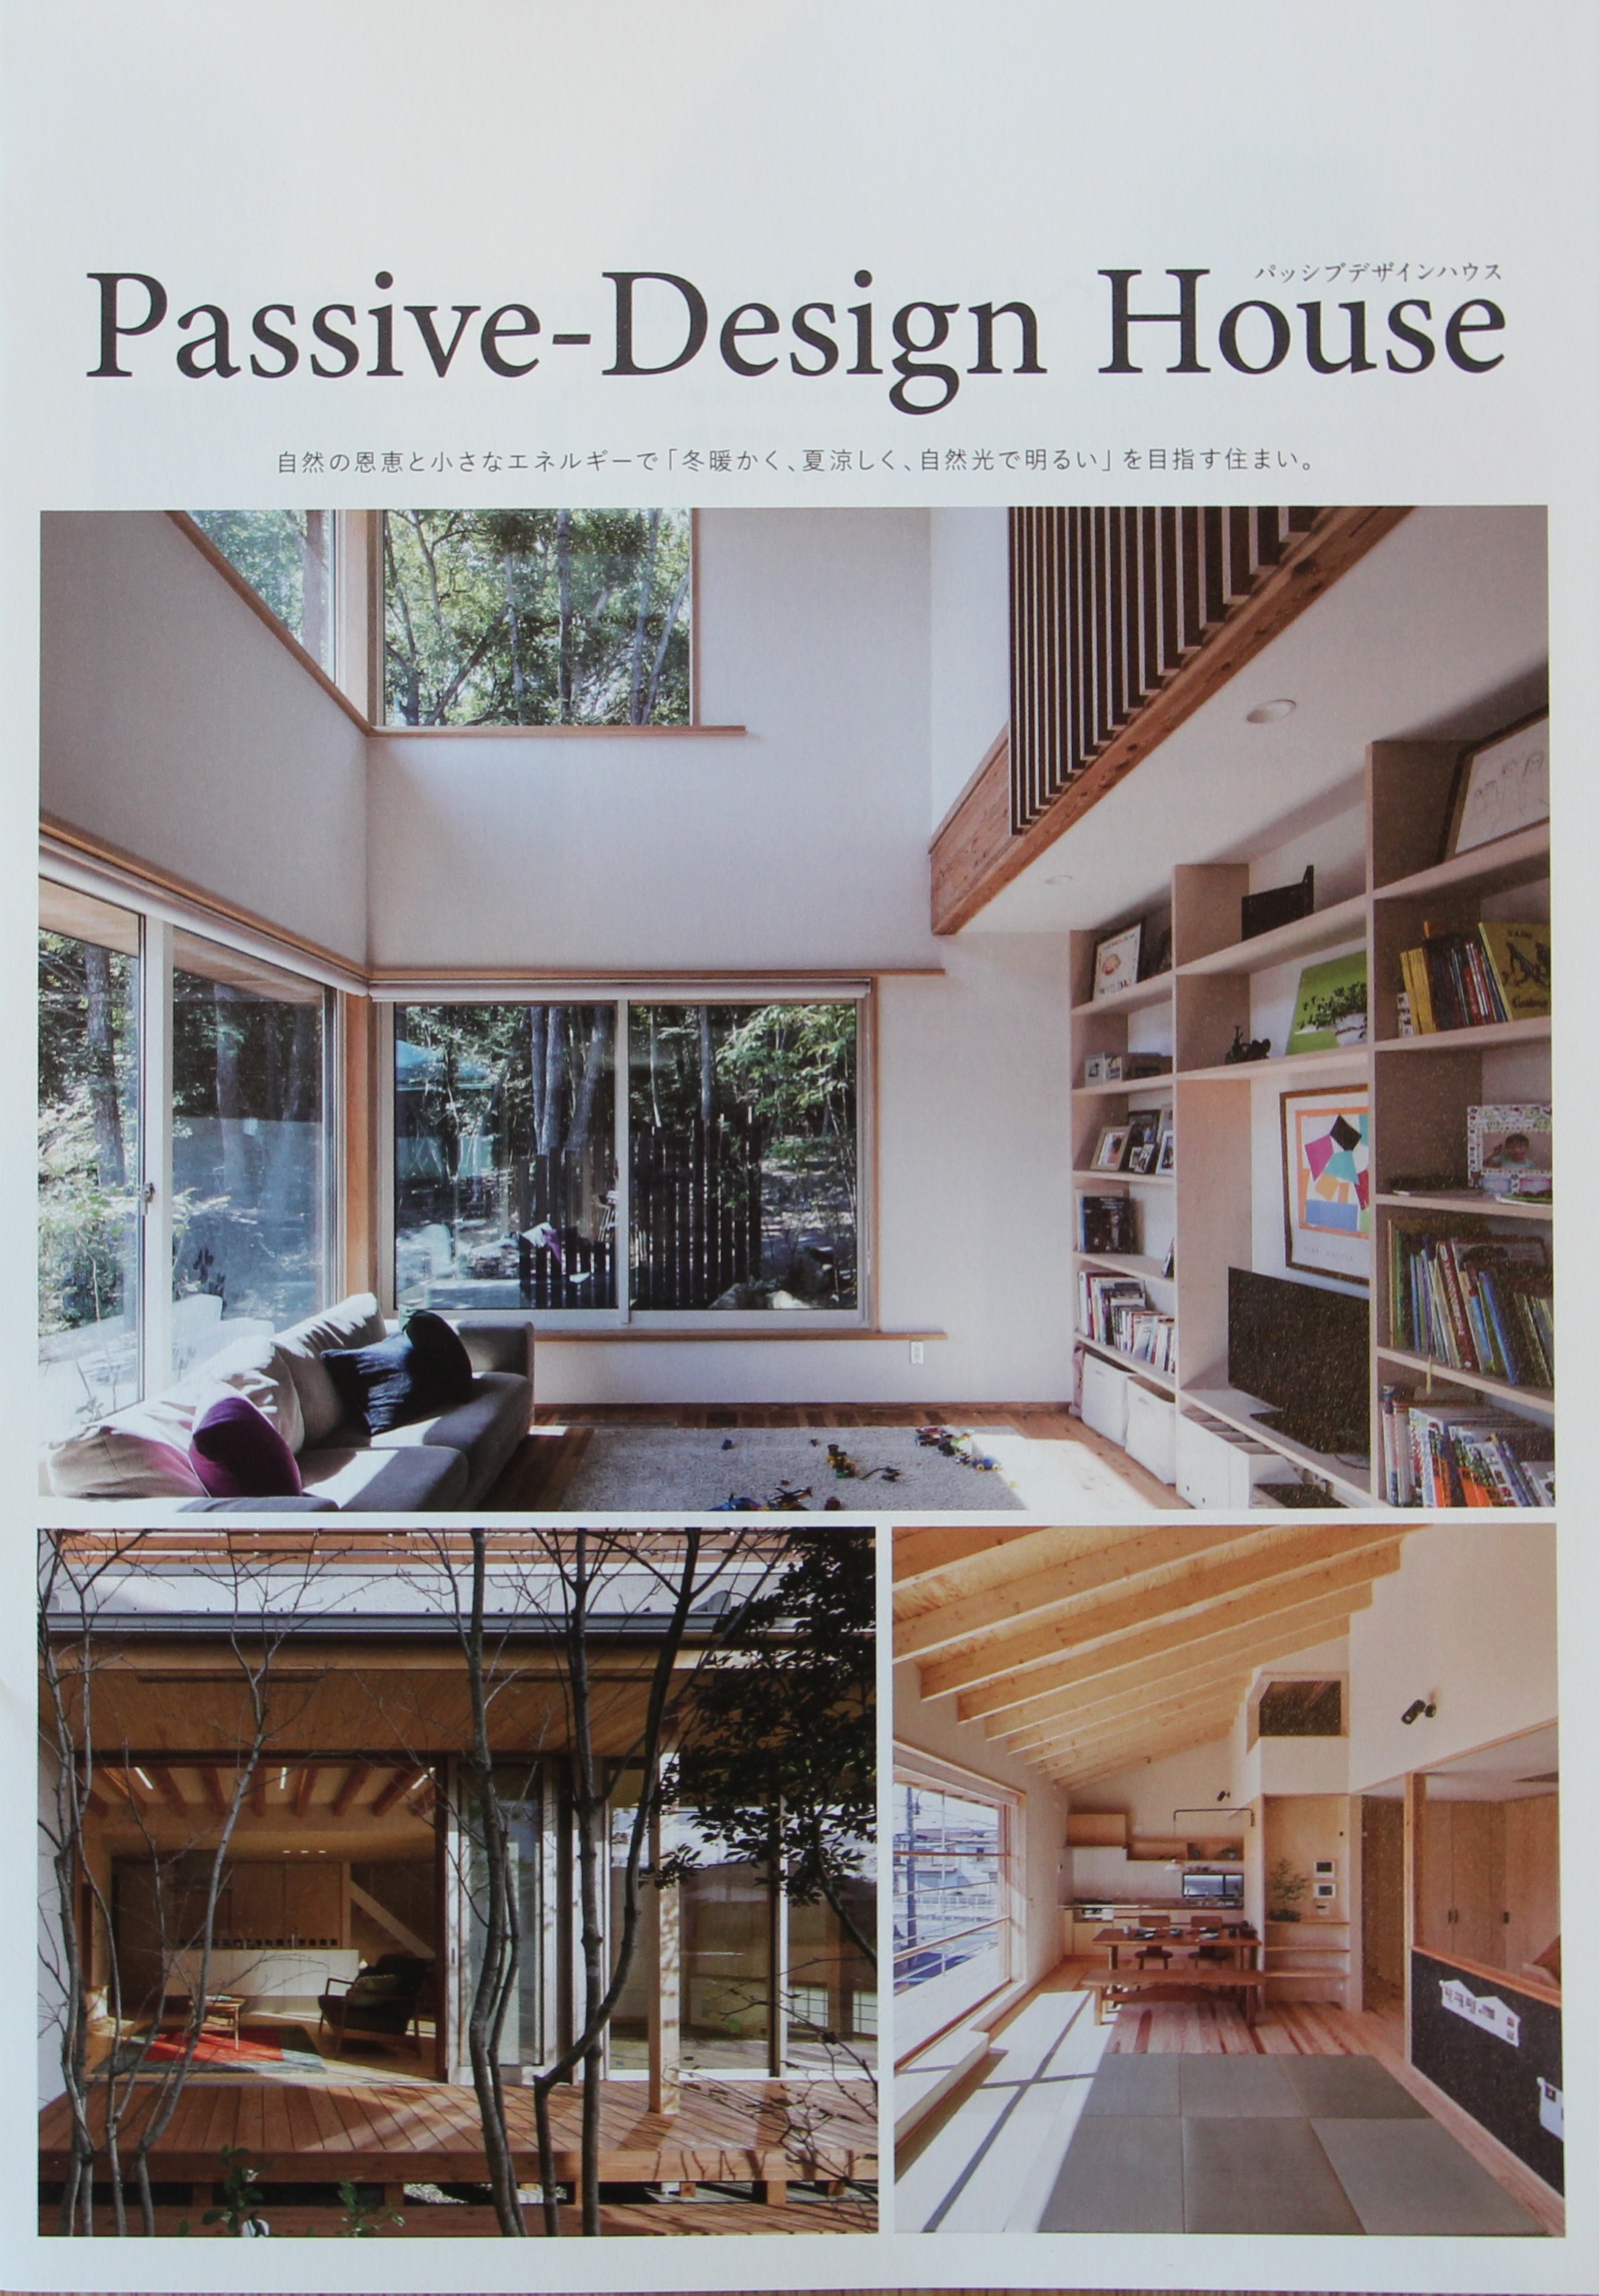 奈良の注文住宅の会社平野木材のパッシブデザインパンフレット